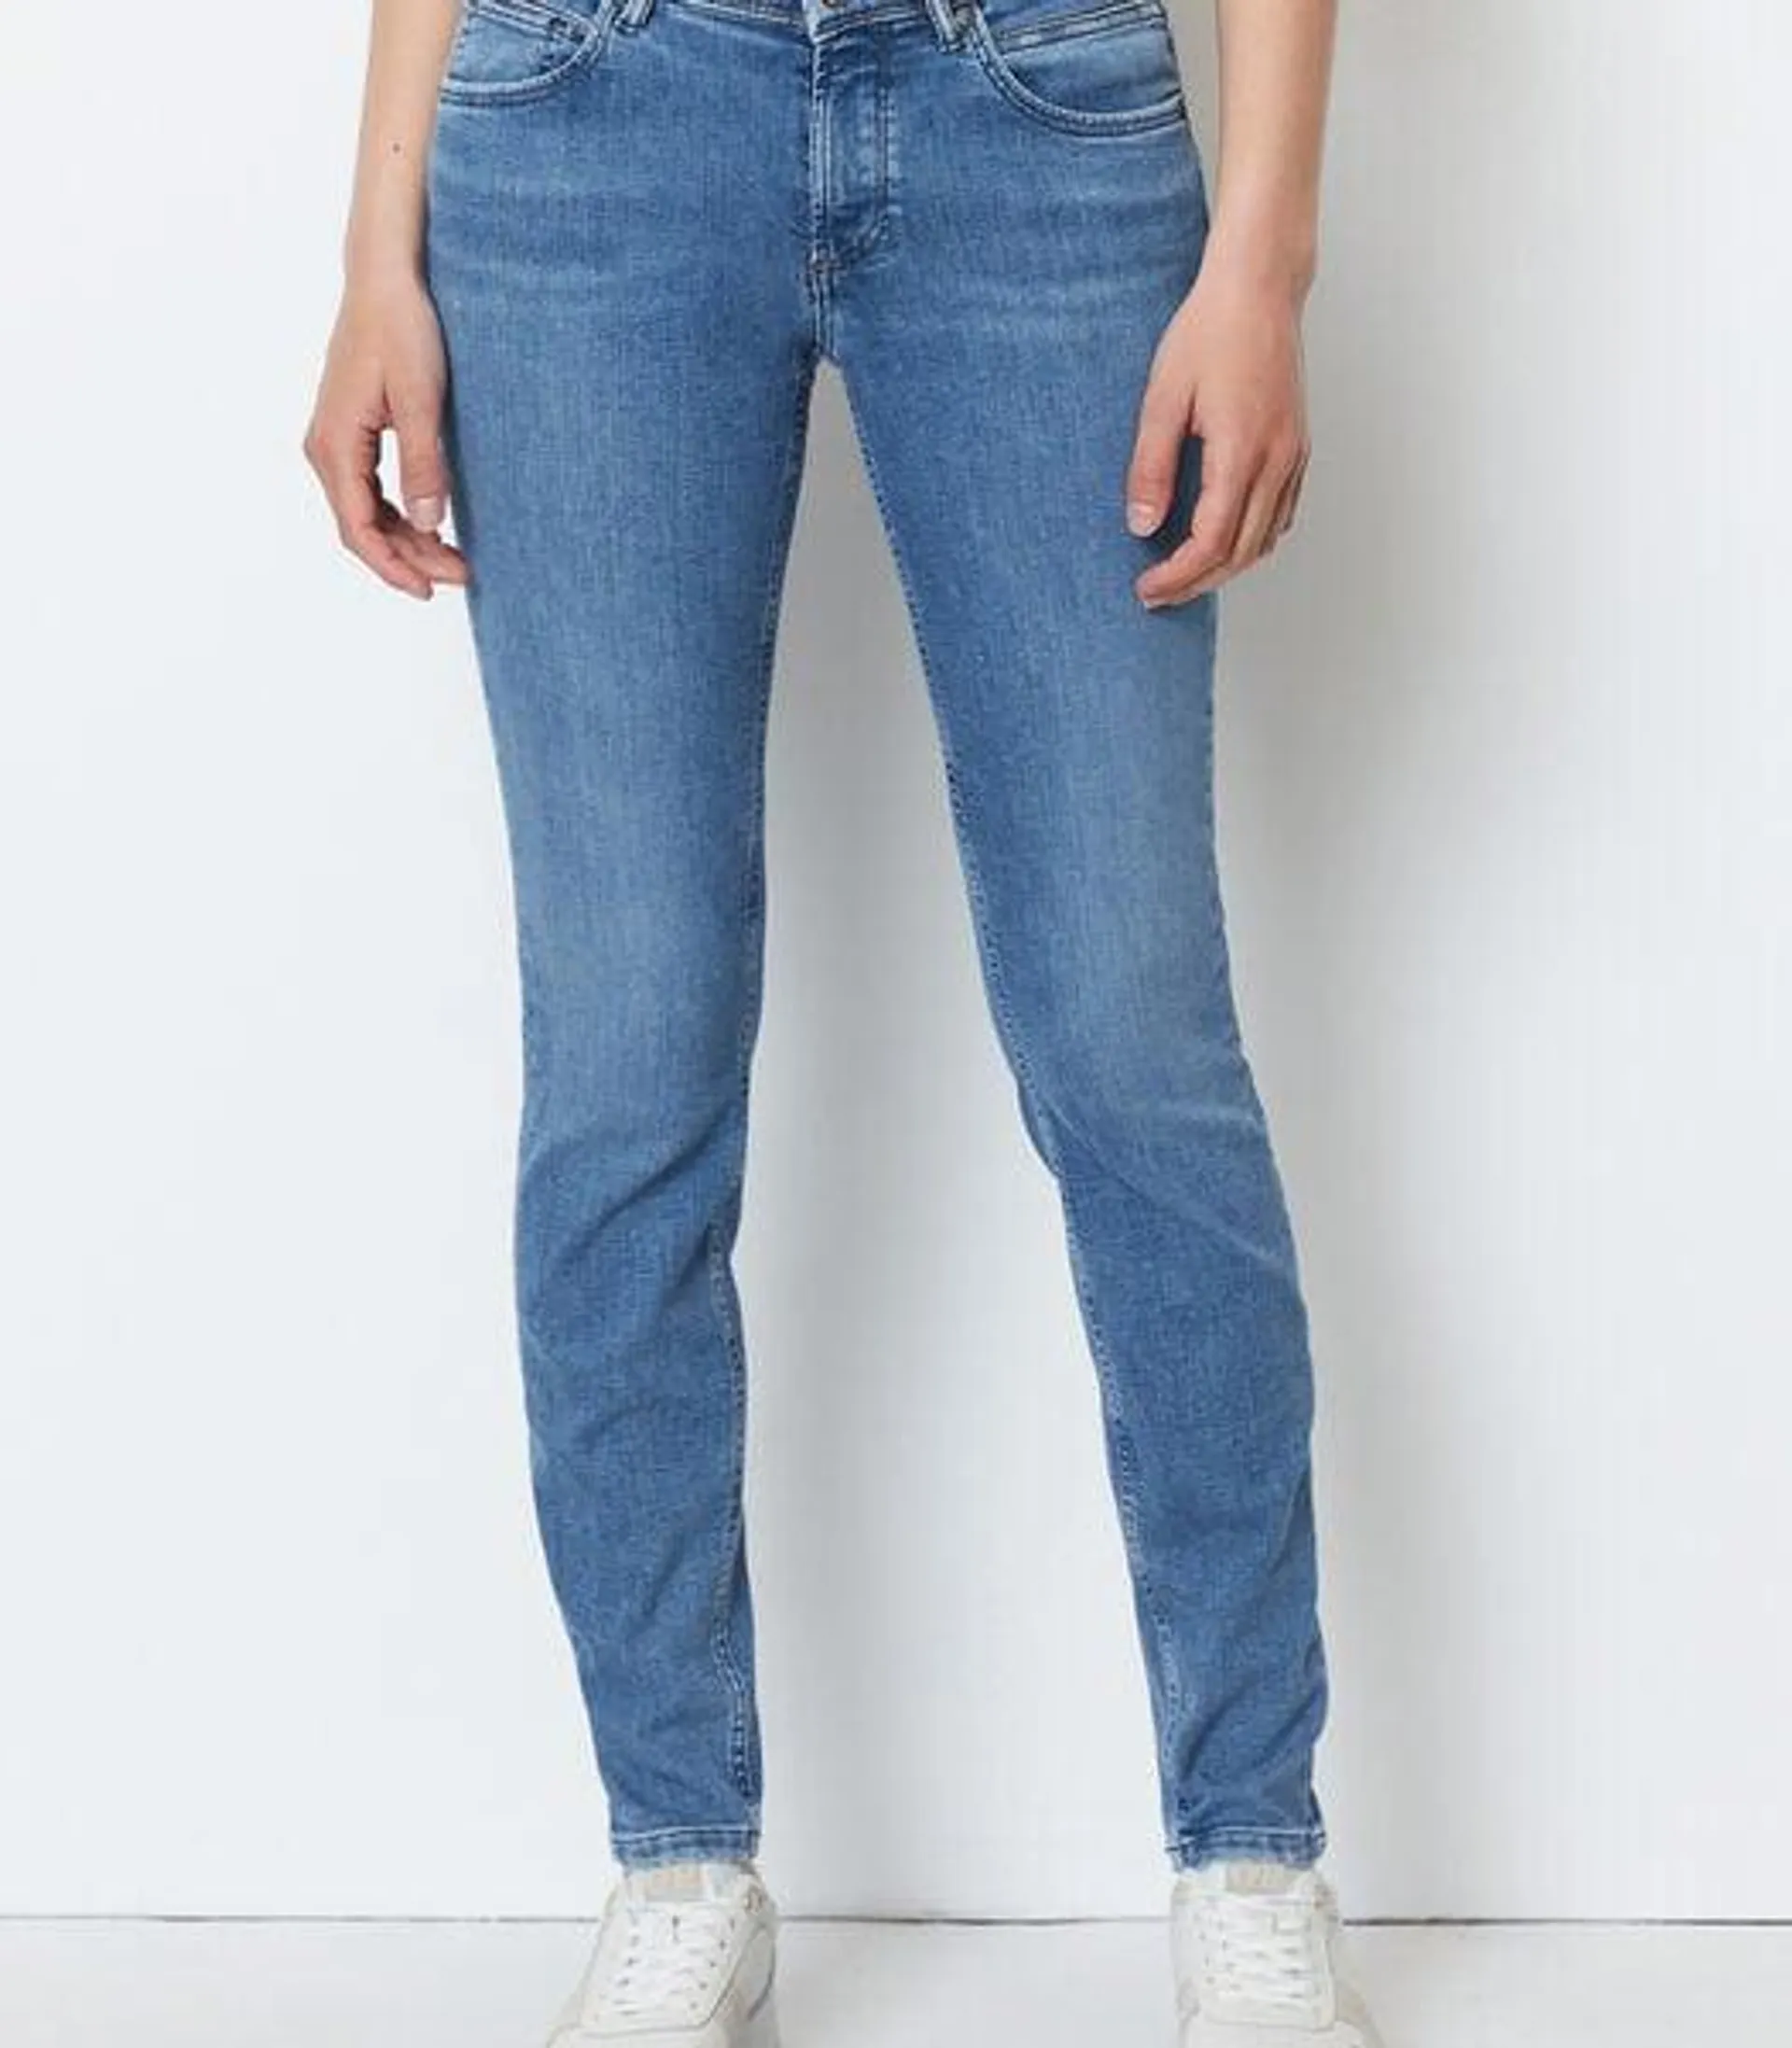 Jeans model ALVA slim